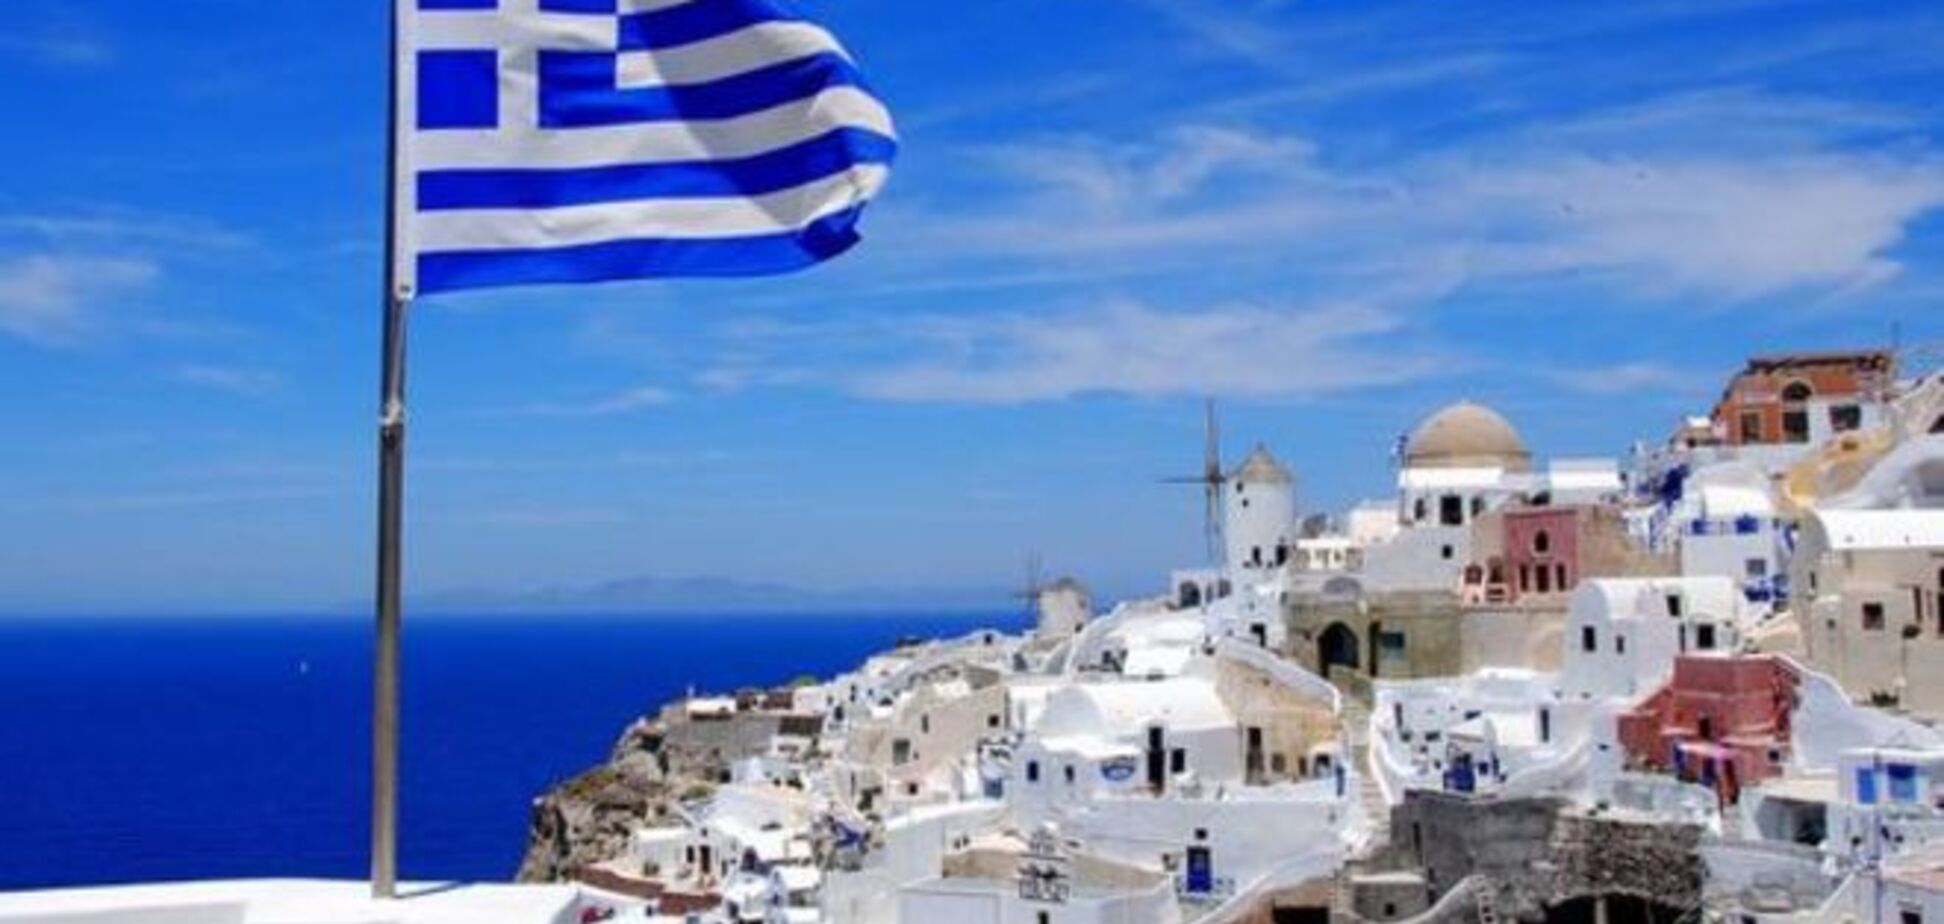 Министр финансов Греции готов отрезать руку, но не подписать соглашение с кредиторами